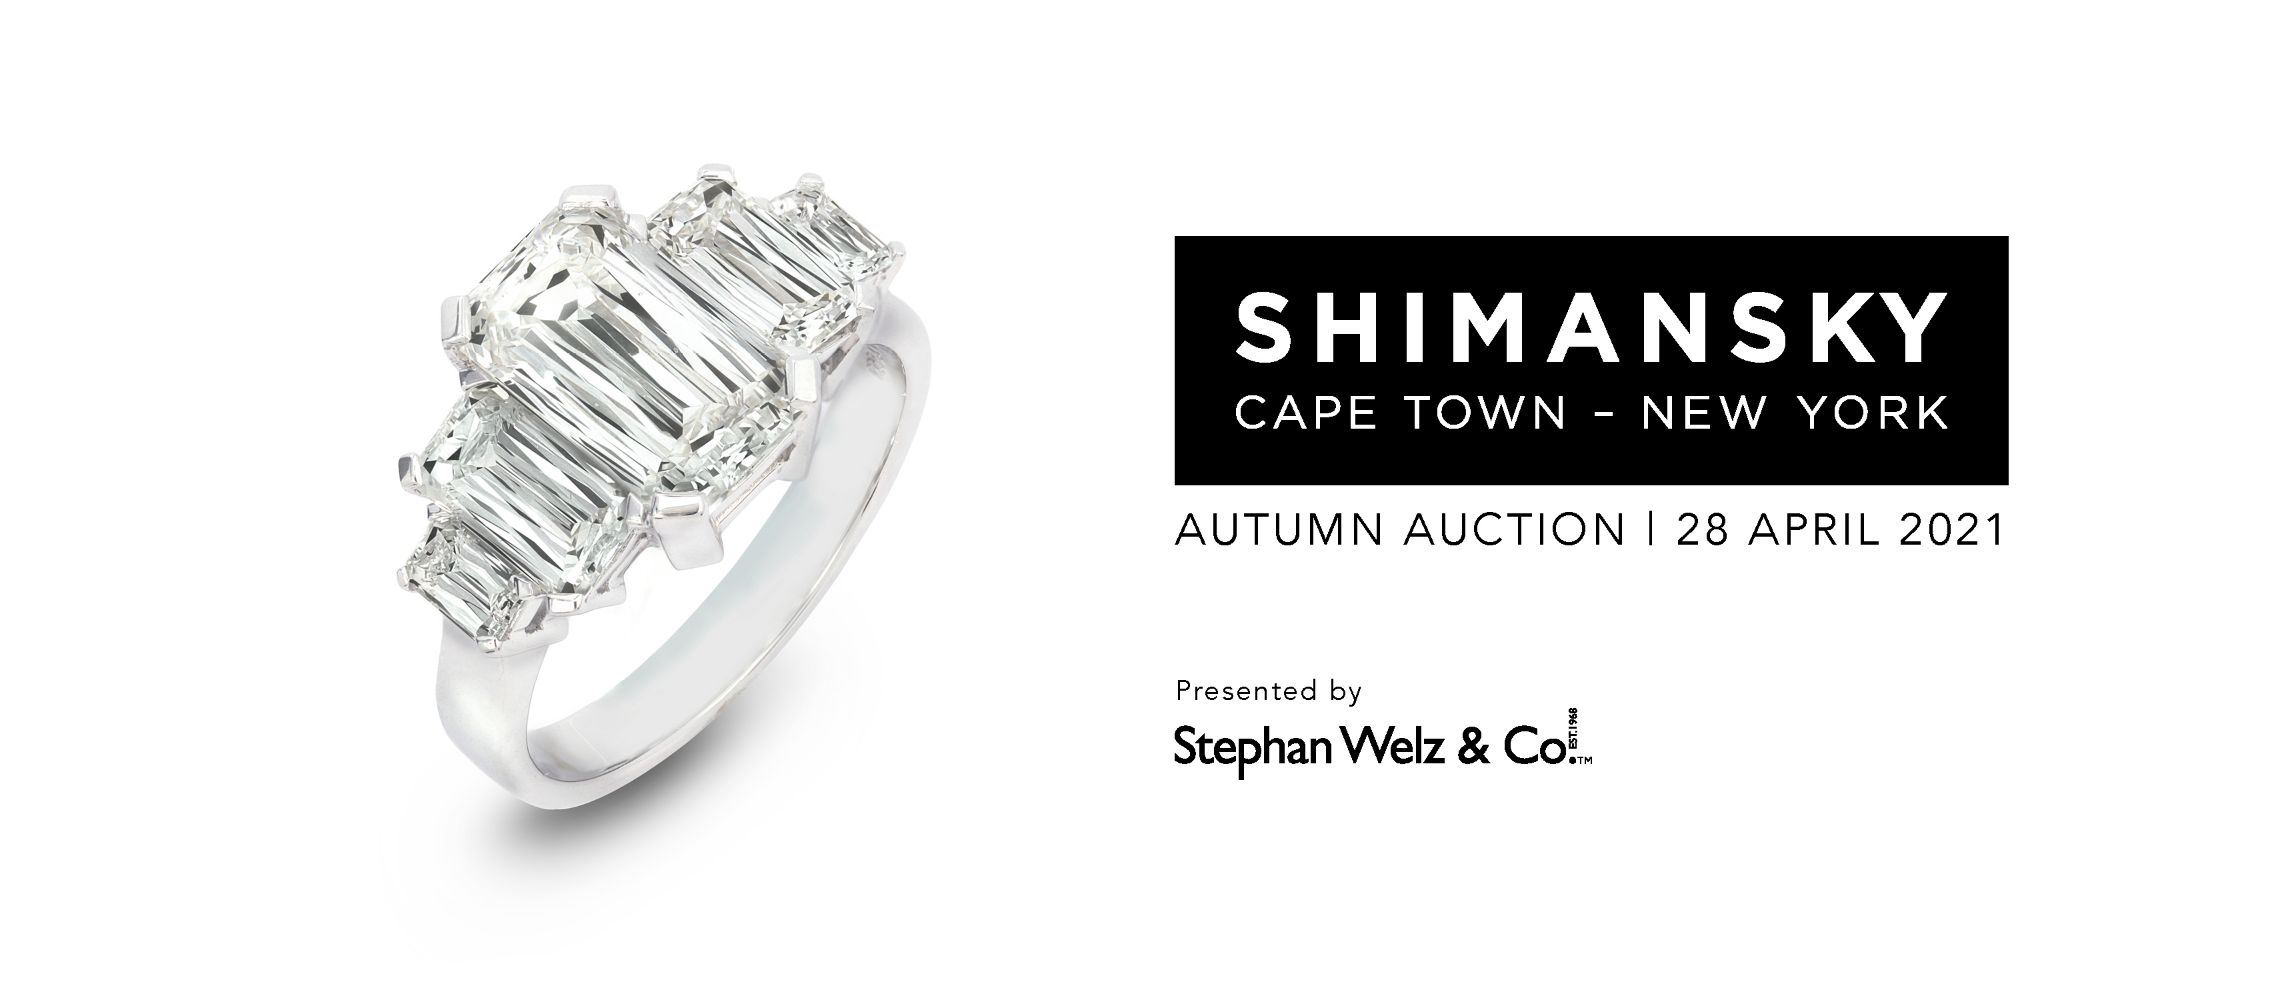 Shimansky Autumn Auction | 28 April 2021